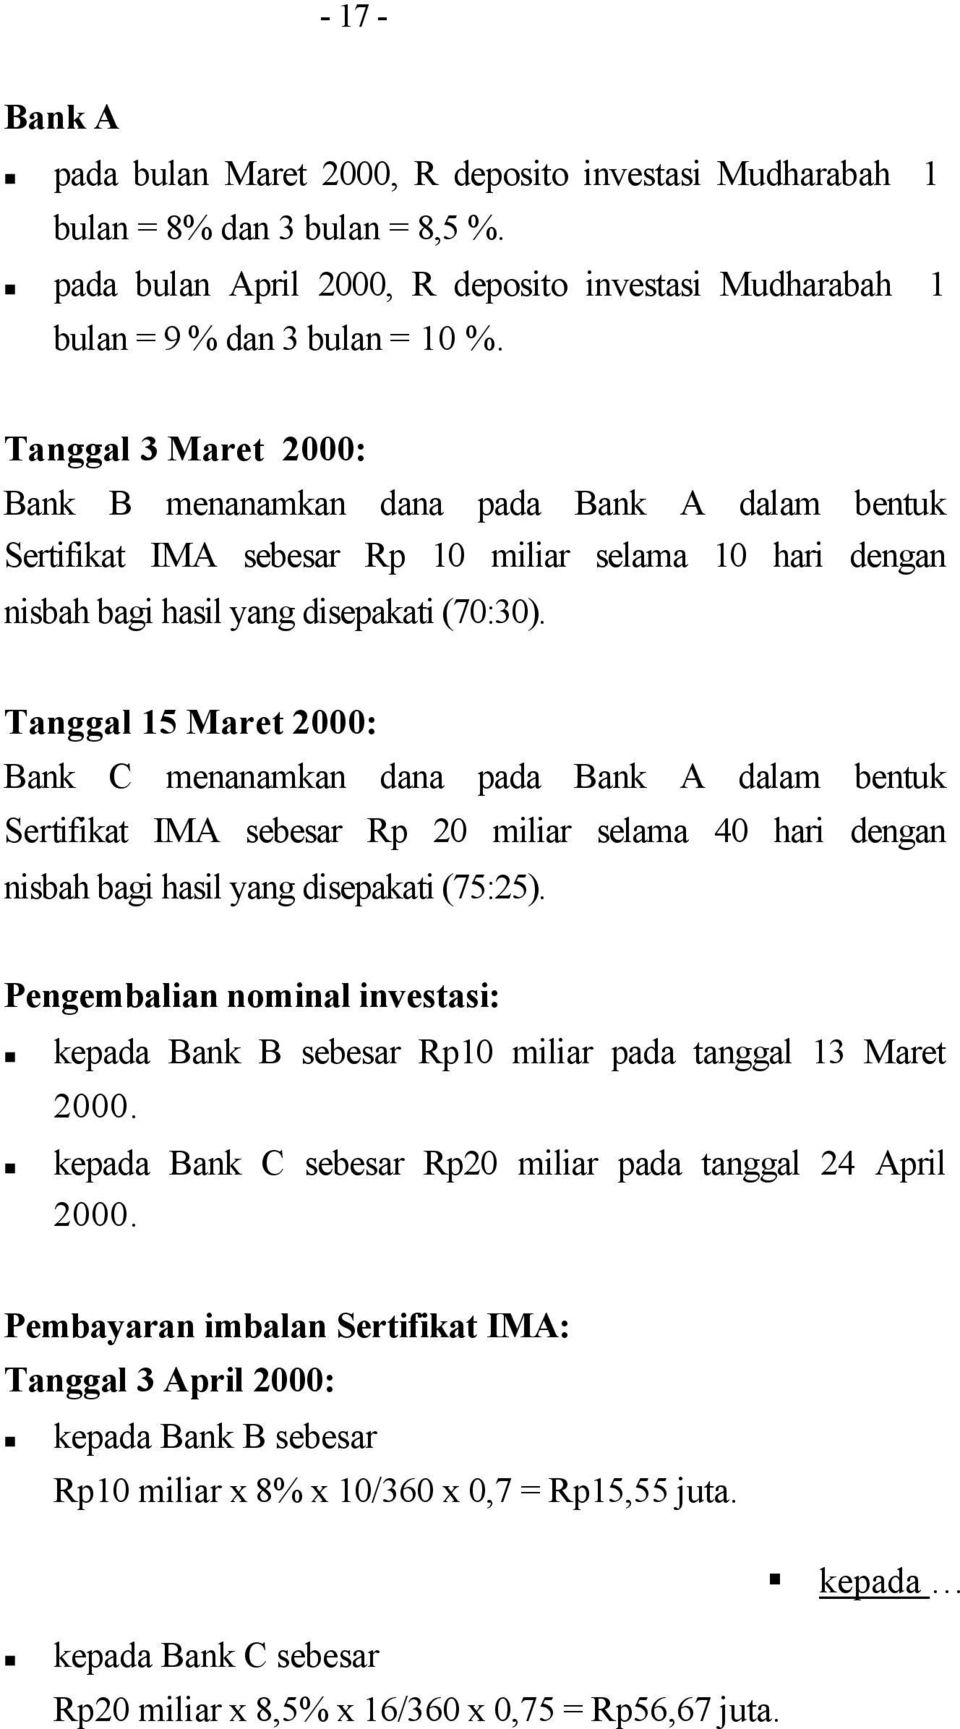 Tanggal 15 Maret 2000: Bank C menanamkan dana pada Bank A dalam bentuk Sertifikat IMA sebesar Rp 20 miliar selama 40 hari dengan nisbah bagi hasil yang disepakati (75:25).